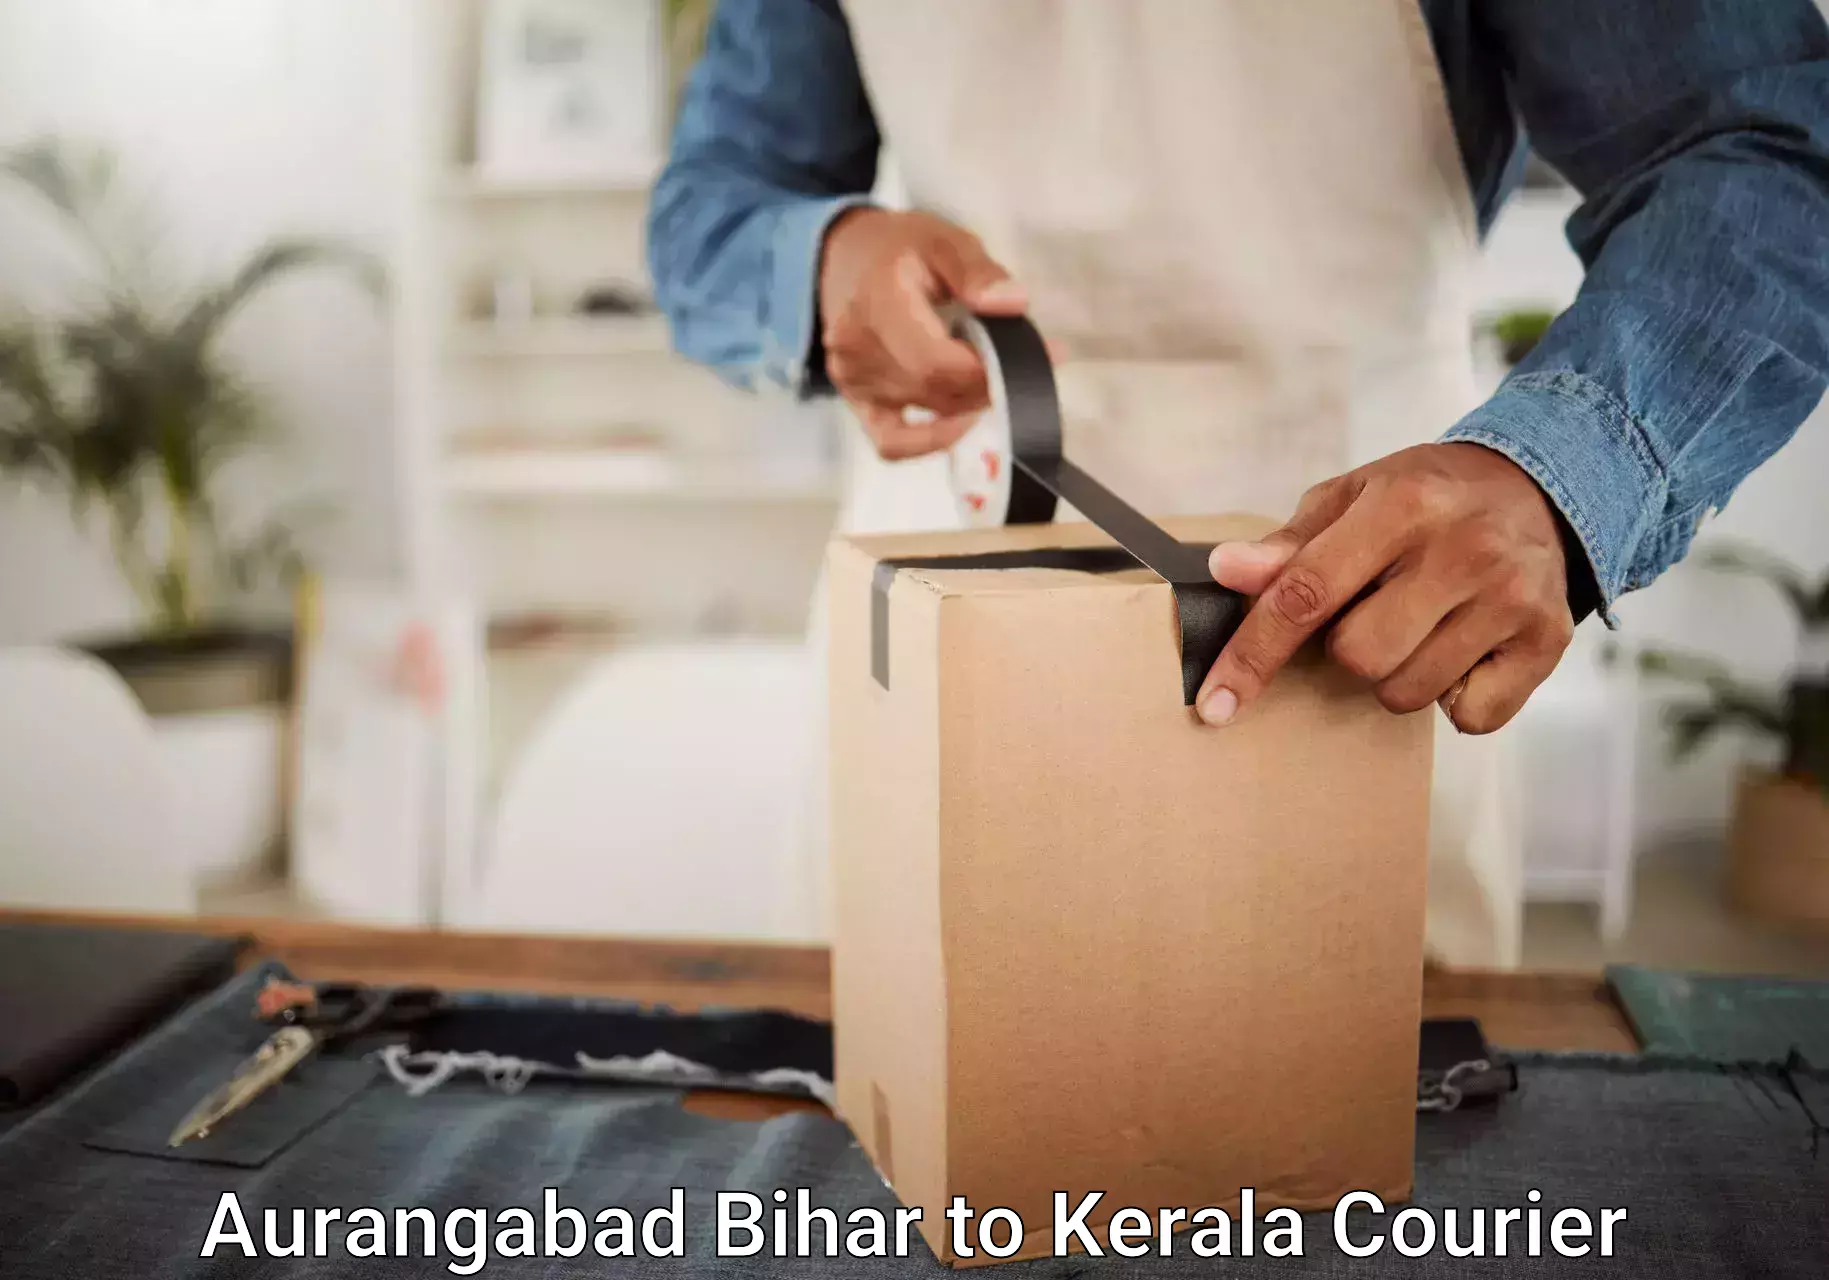 Luggage delivery app Aurangabad Bihar to Pathanamthitta